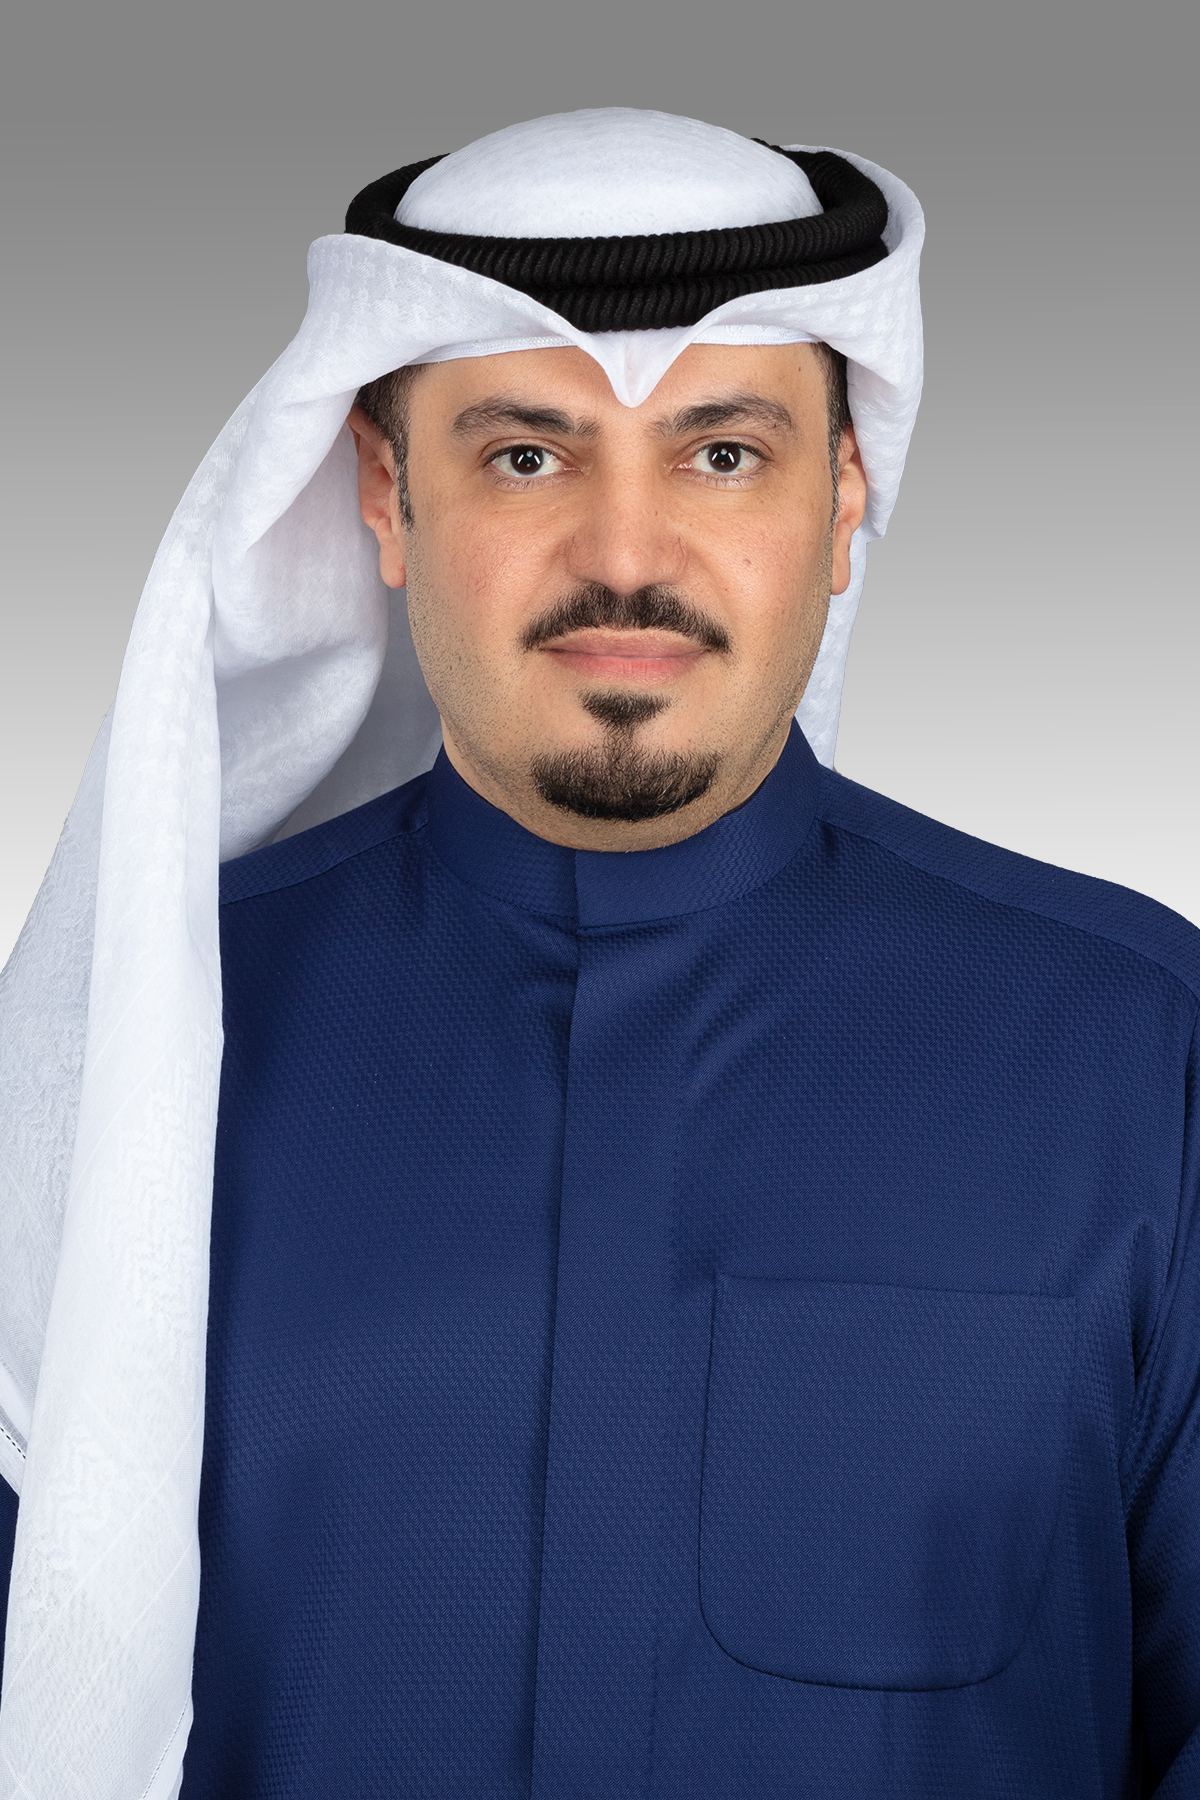 هشام الصالح يوجه سؤالين إلى وزيري الأشغال والمالية